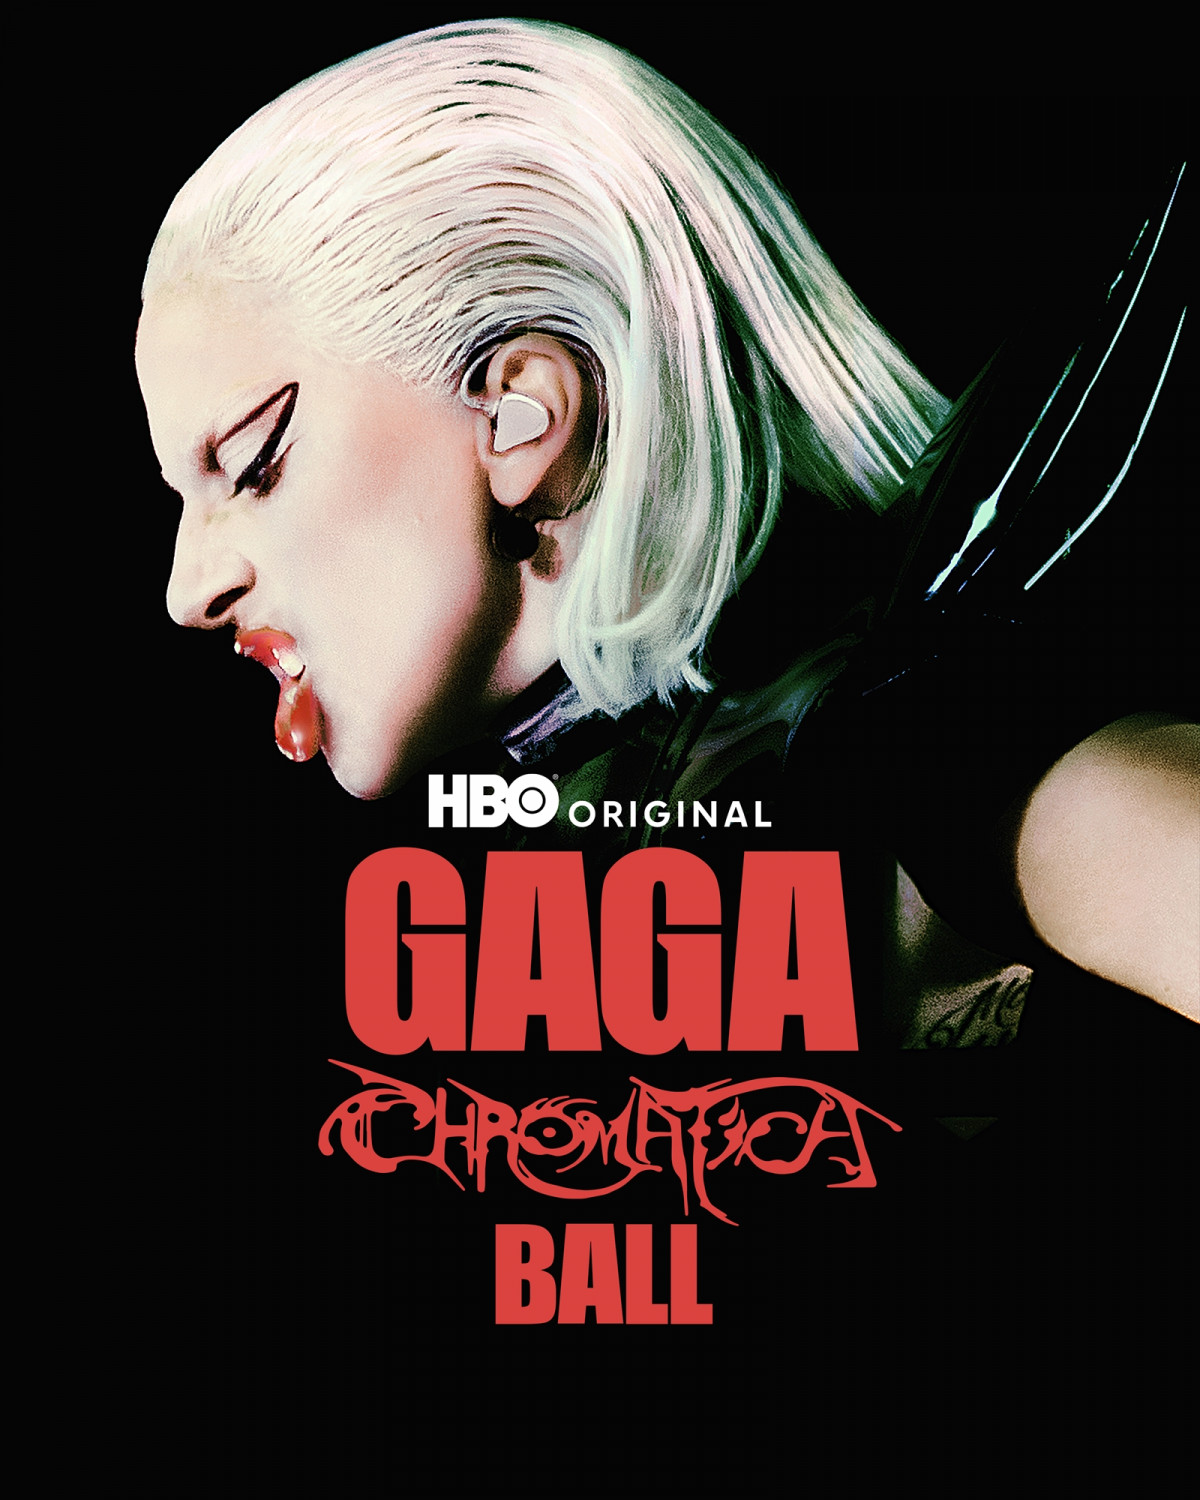 レディー・ガガのコンサートフィルム『GAGA CHROMATICA BALL』米国と同時配信決定 | ORICON NEWS